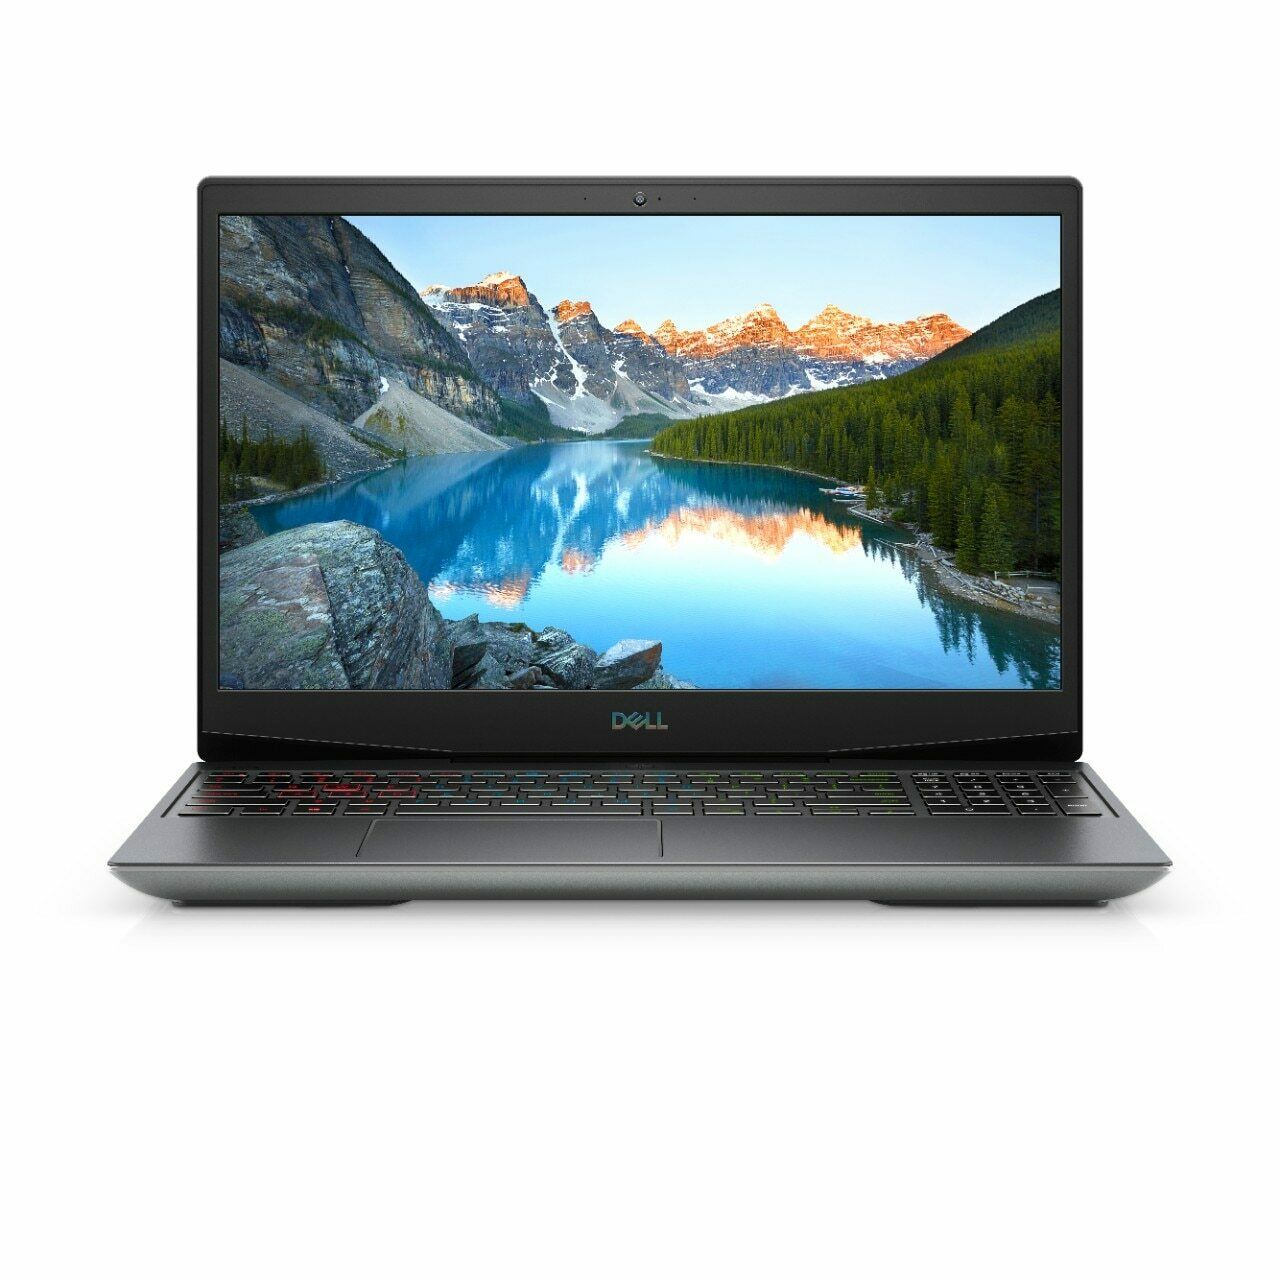 Dell Alienware m15 R4 Laptop•W10H•FHD 144hz 15.6"•3080 8GB RTX